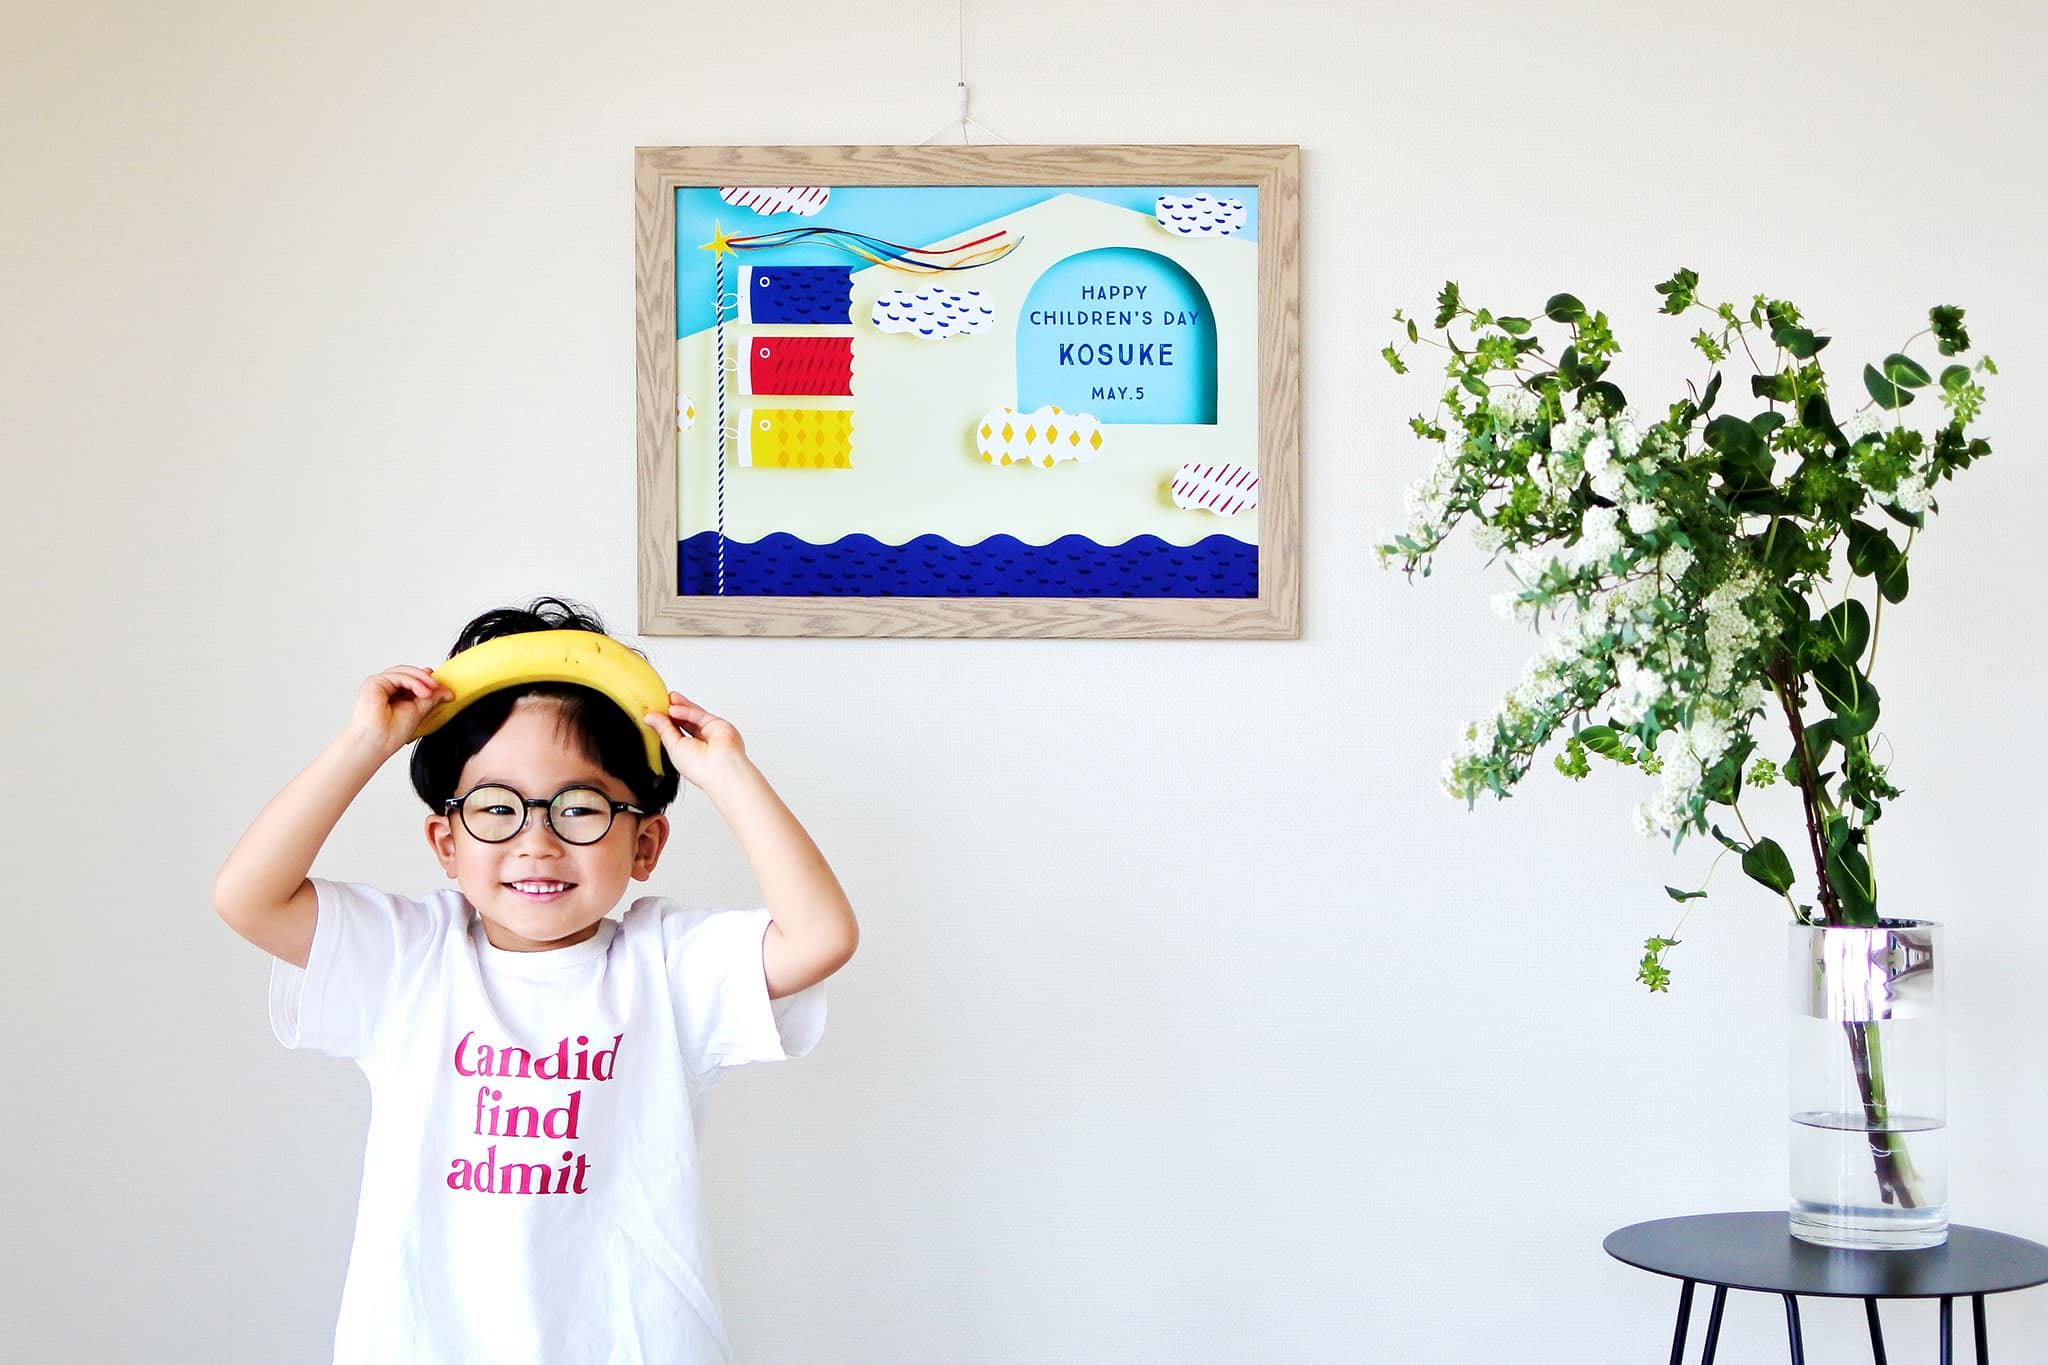 「おしゃれでコンパクトな こいのぼり&金太郎デザインポスター」が全国のパパ・ママに選ばれた「５つの理由」選んだ理由2. 飾った瞬間「こどもの日モード」